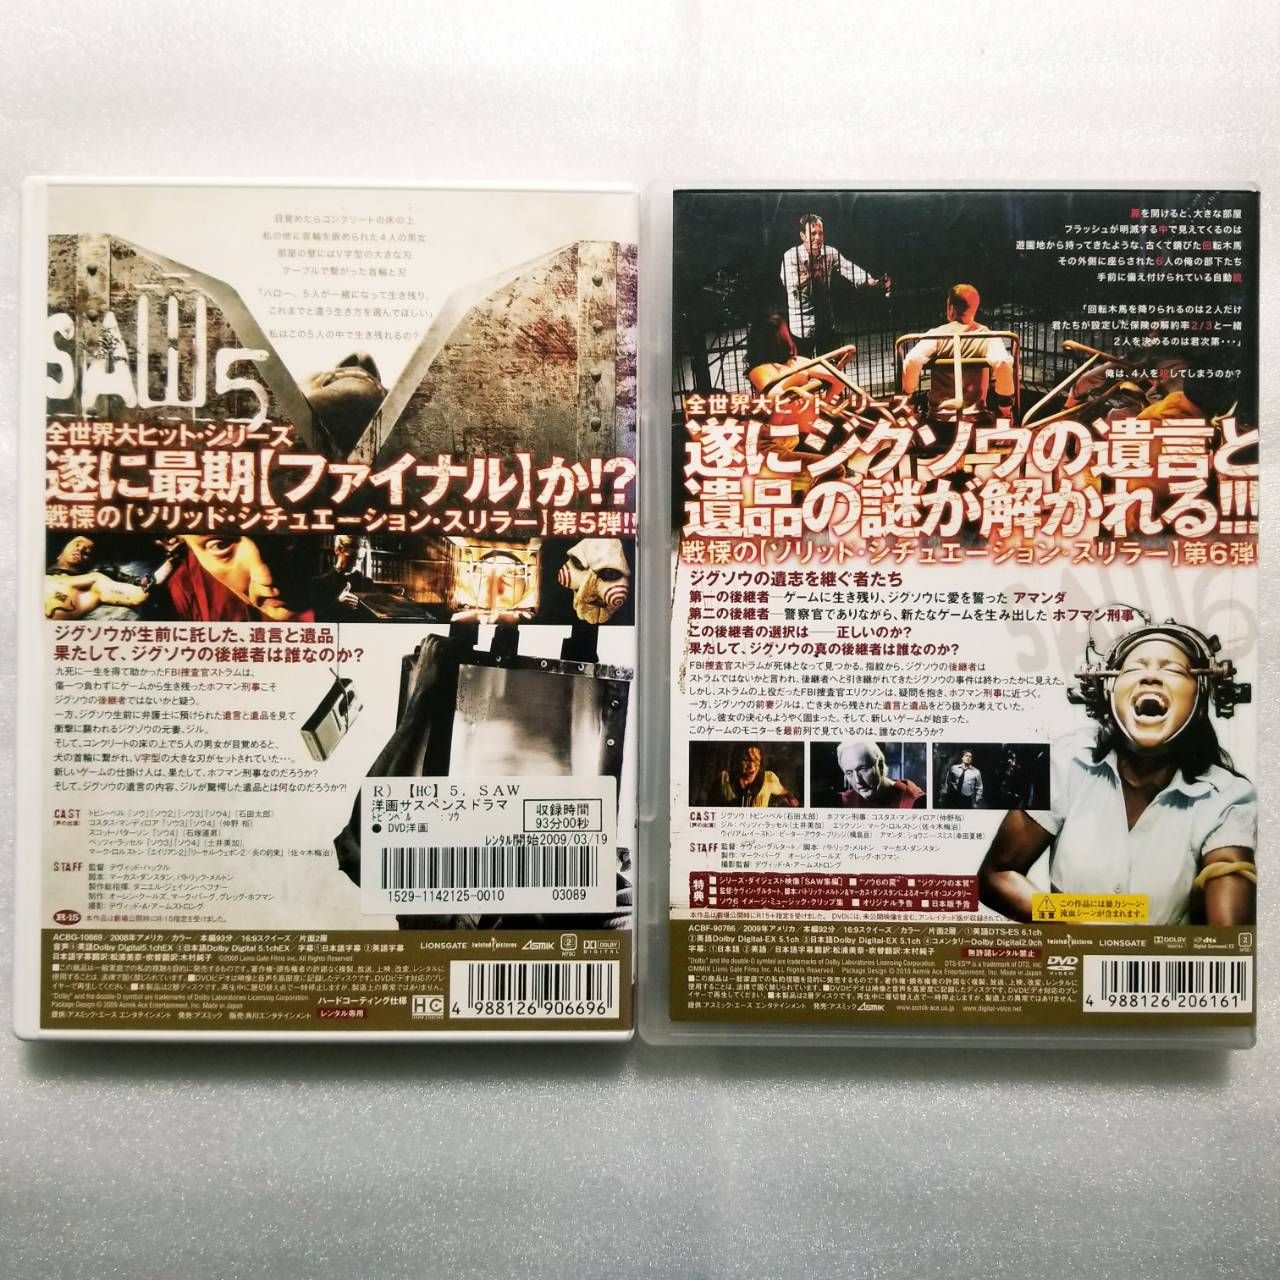 ソウ SAW DVD 2作品セット - 洋画・外国映画